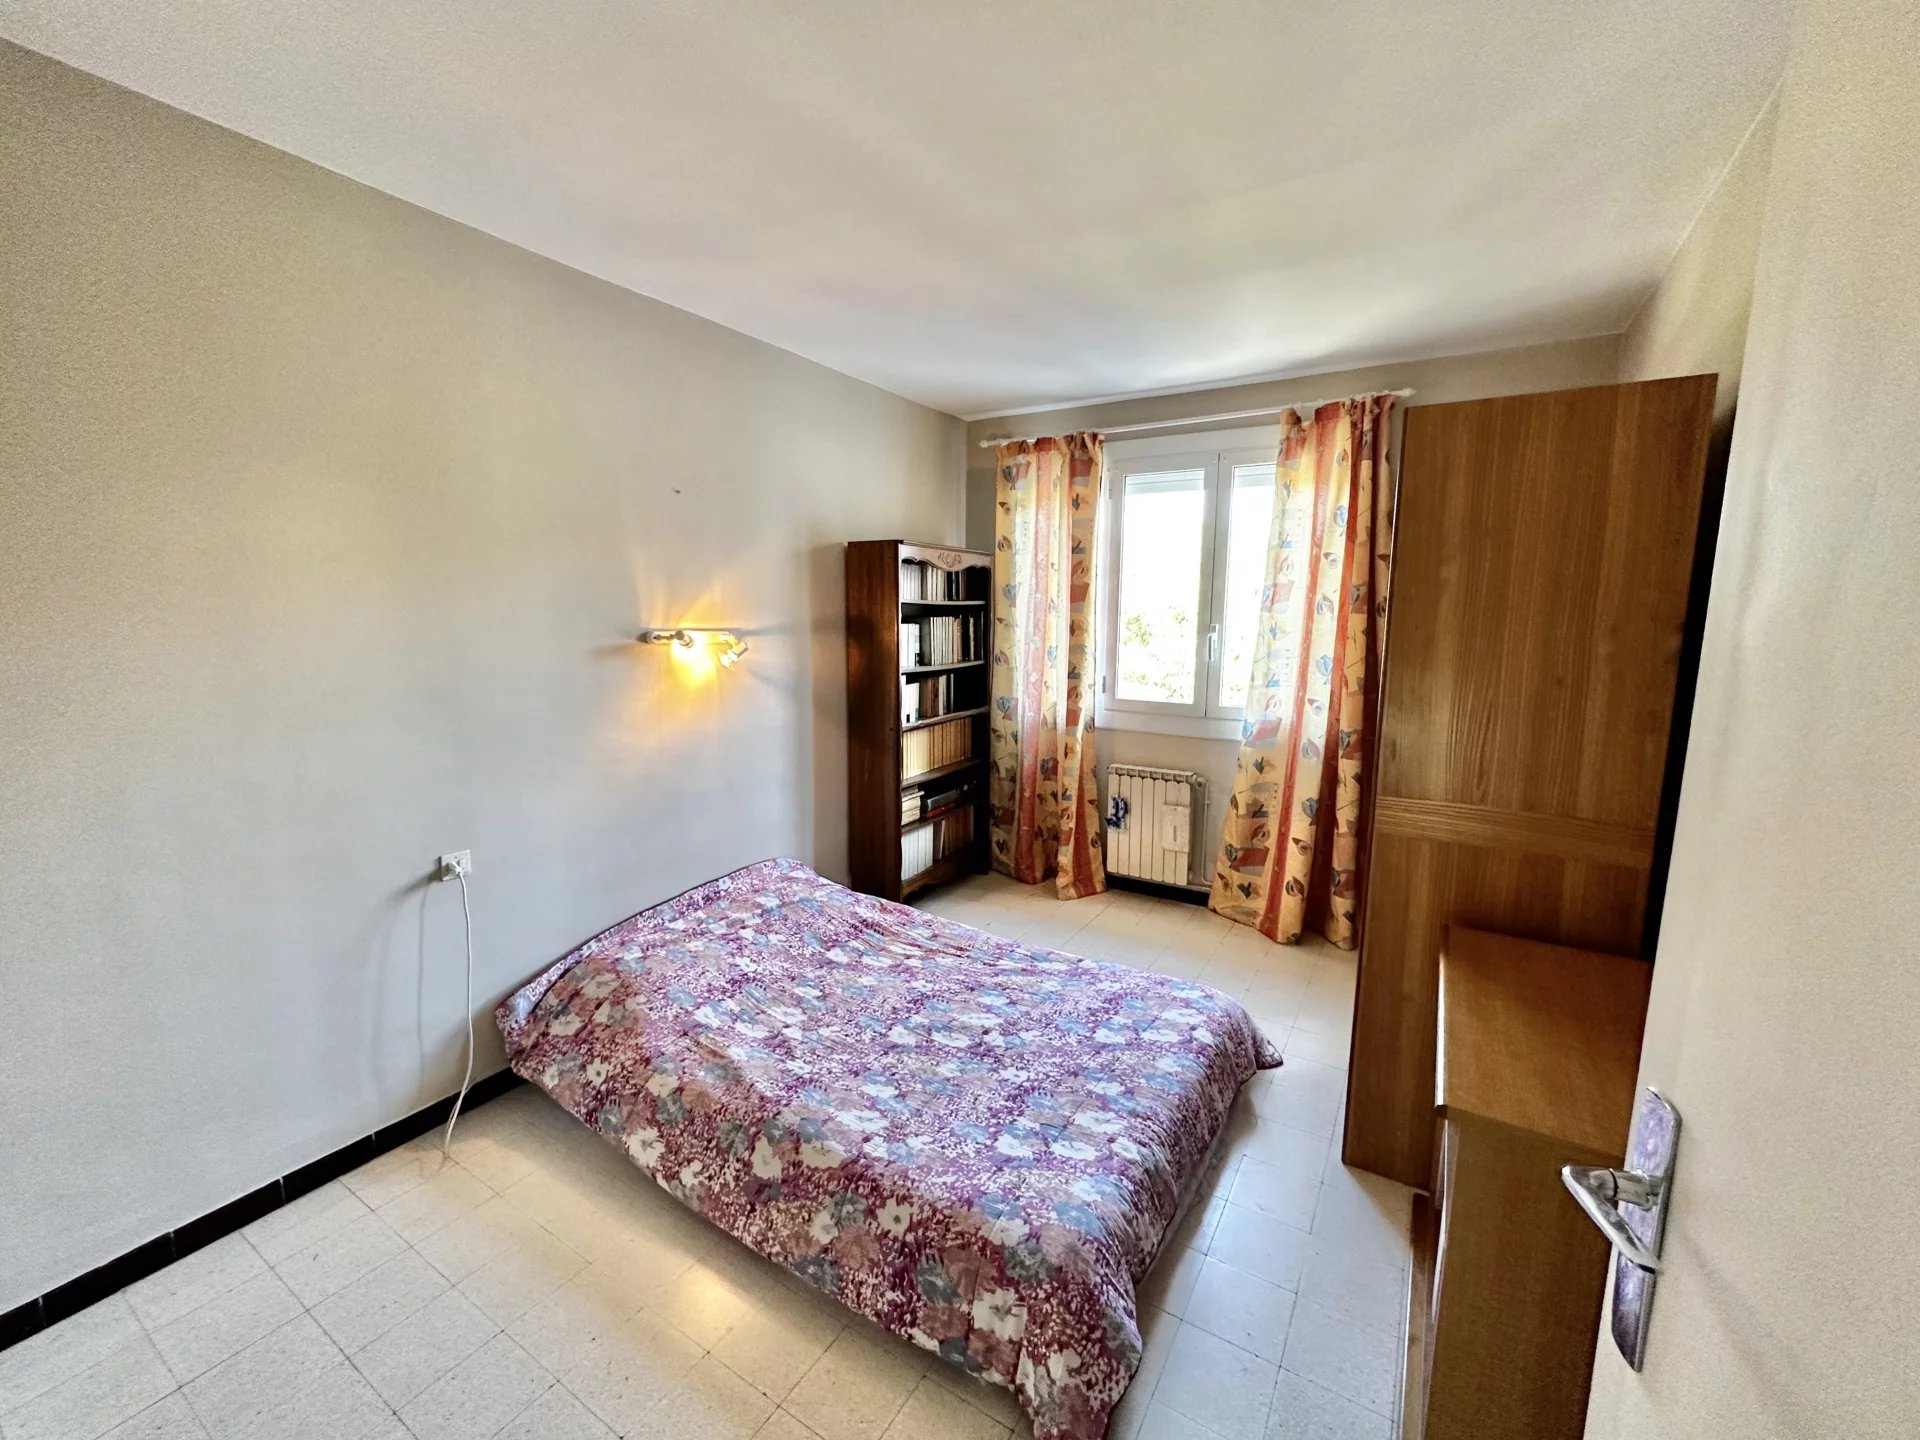 Sale Apartment - Perpignan La Lunette